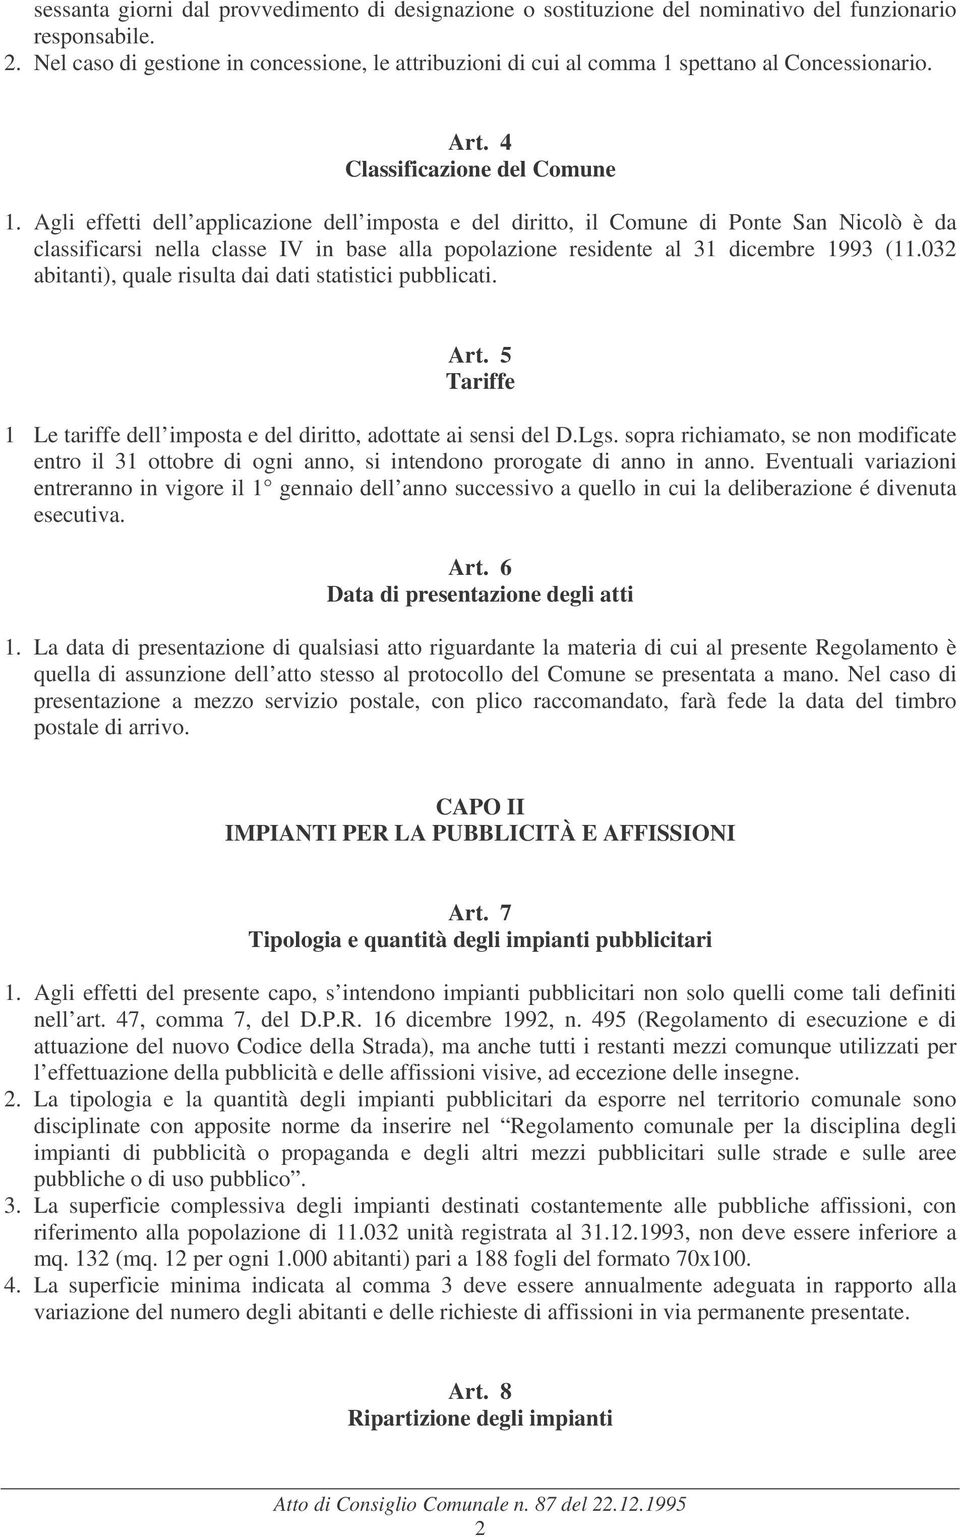 Agli effetti dell applicazione dell imposta e del diritto, il Comune di Ponte San Nicolò è da classificarsi nella classe IV in base alla popolazione residente al 31 dicembre 1993 (11.